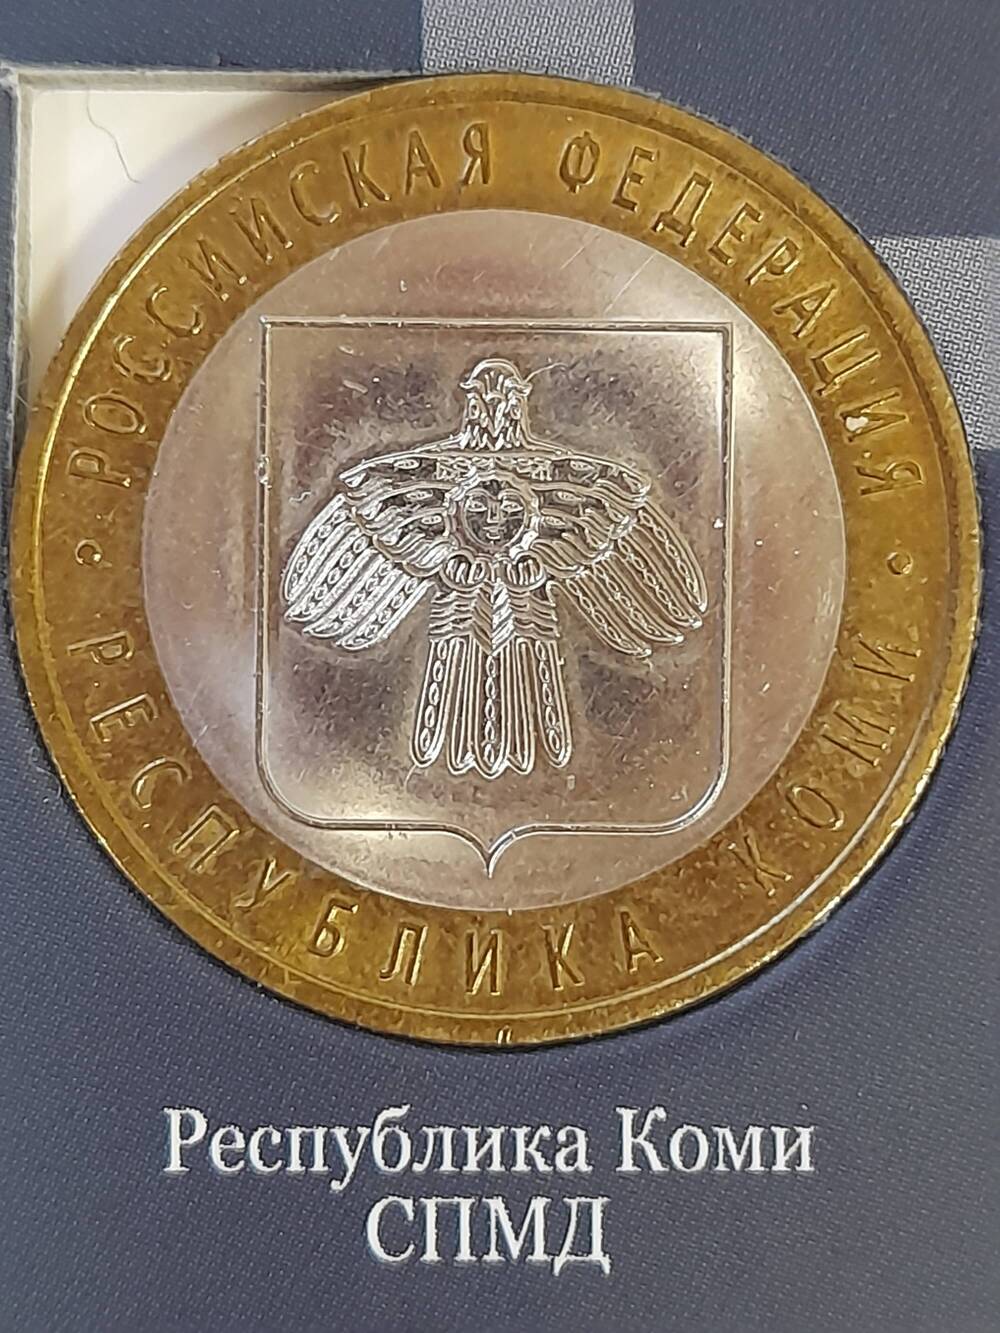 Монета памятная 10 РУБЛЕЙ. Республика Коми 2009 г. Россия